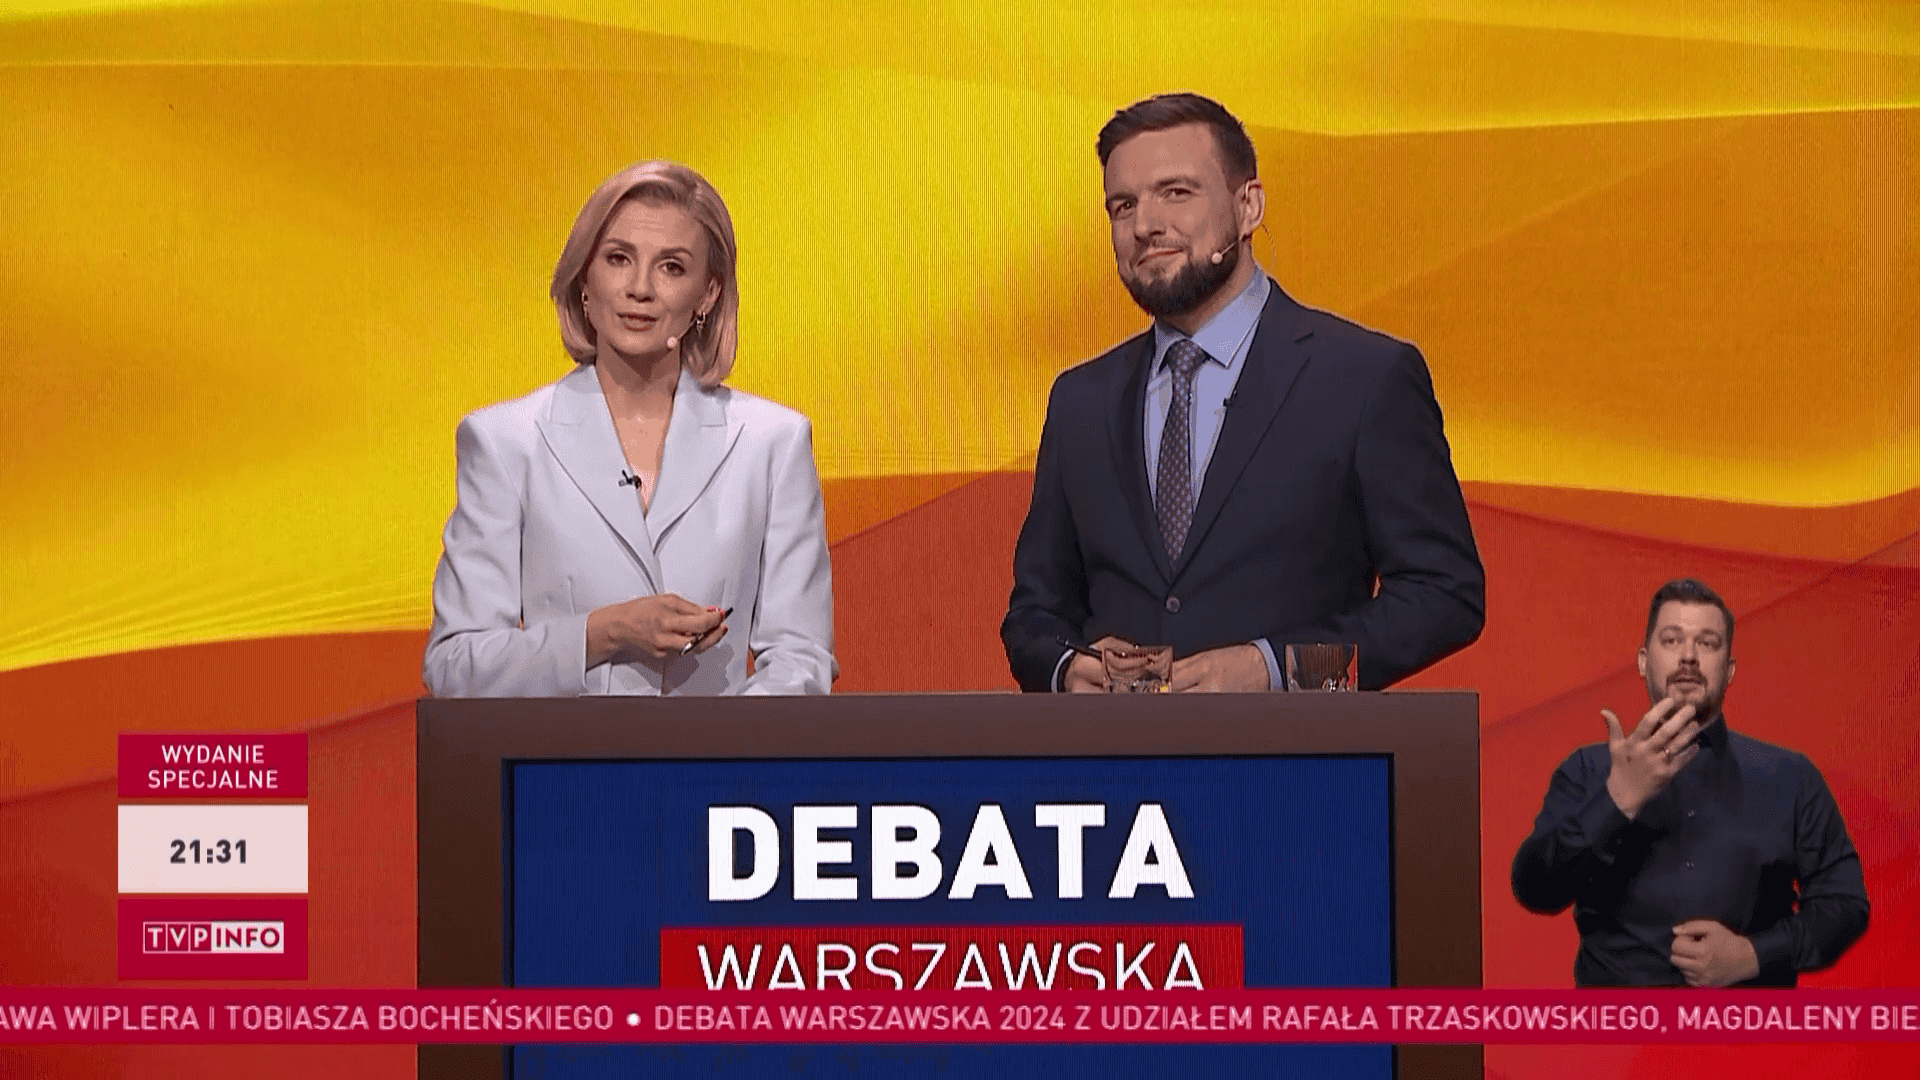 Ekspert ocenił debatę przedwyborczą, fot. kadr z debaty przedwyborczej, prod. TVP Info 4.png